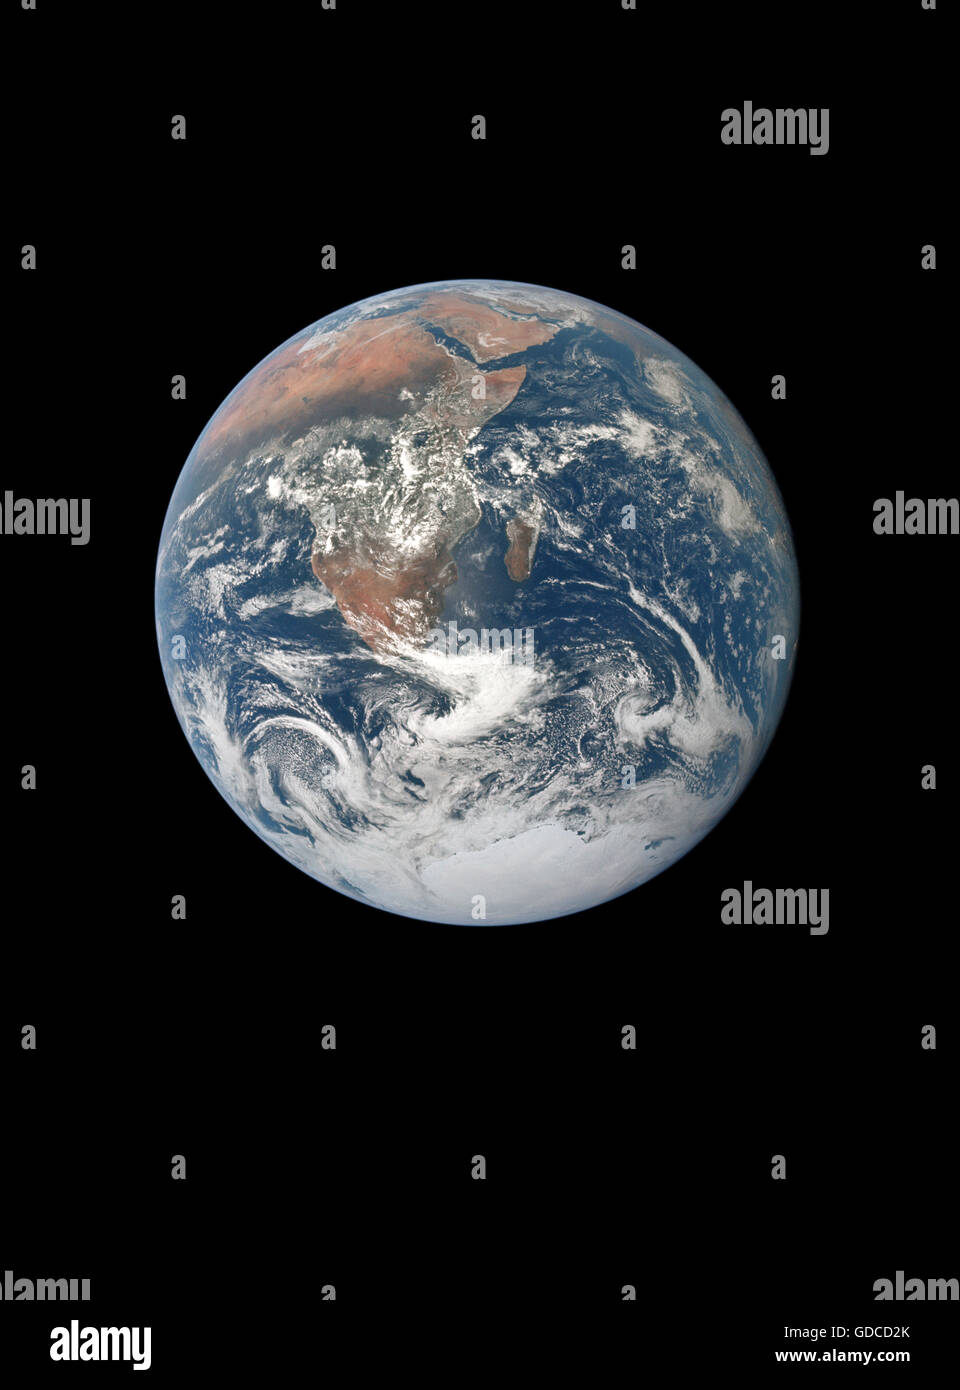 La terre vue de l'espace. Amélioration de l'image haute résolution. Optimisée et unique version améliorée d'un original de l'image de la NASA Banque D'Images